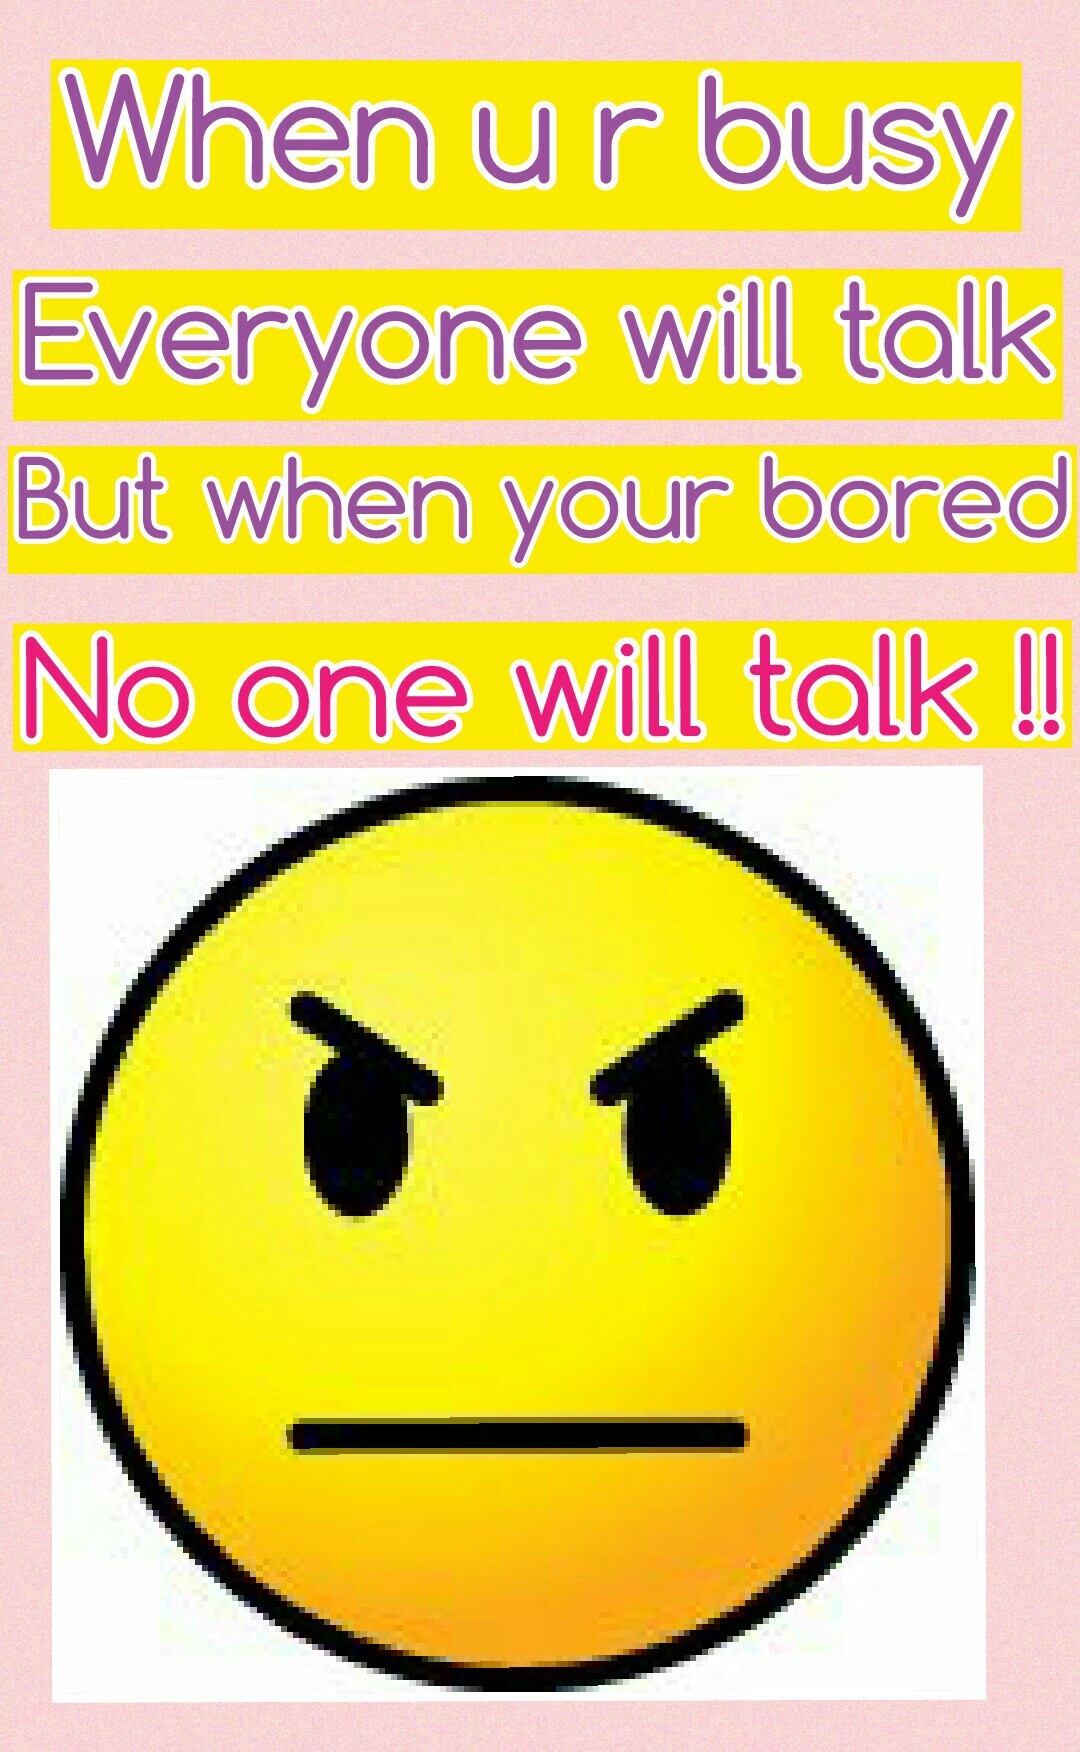 No one will talk !!